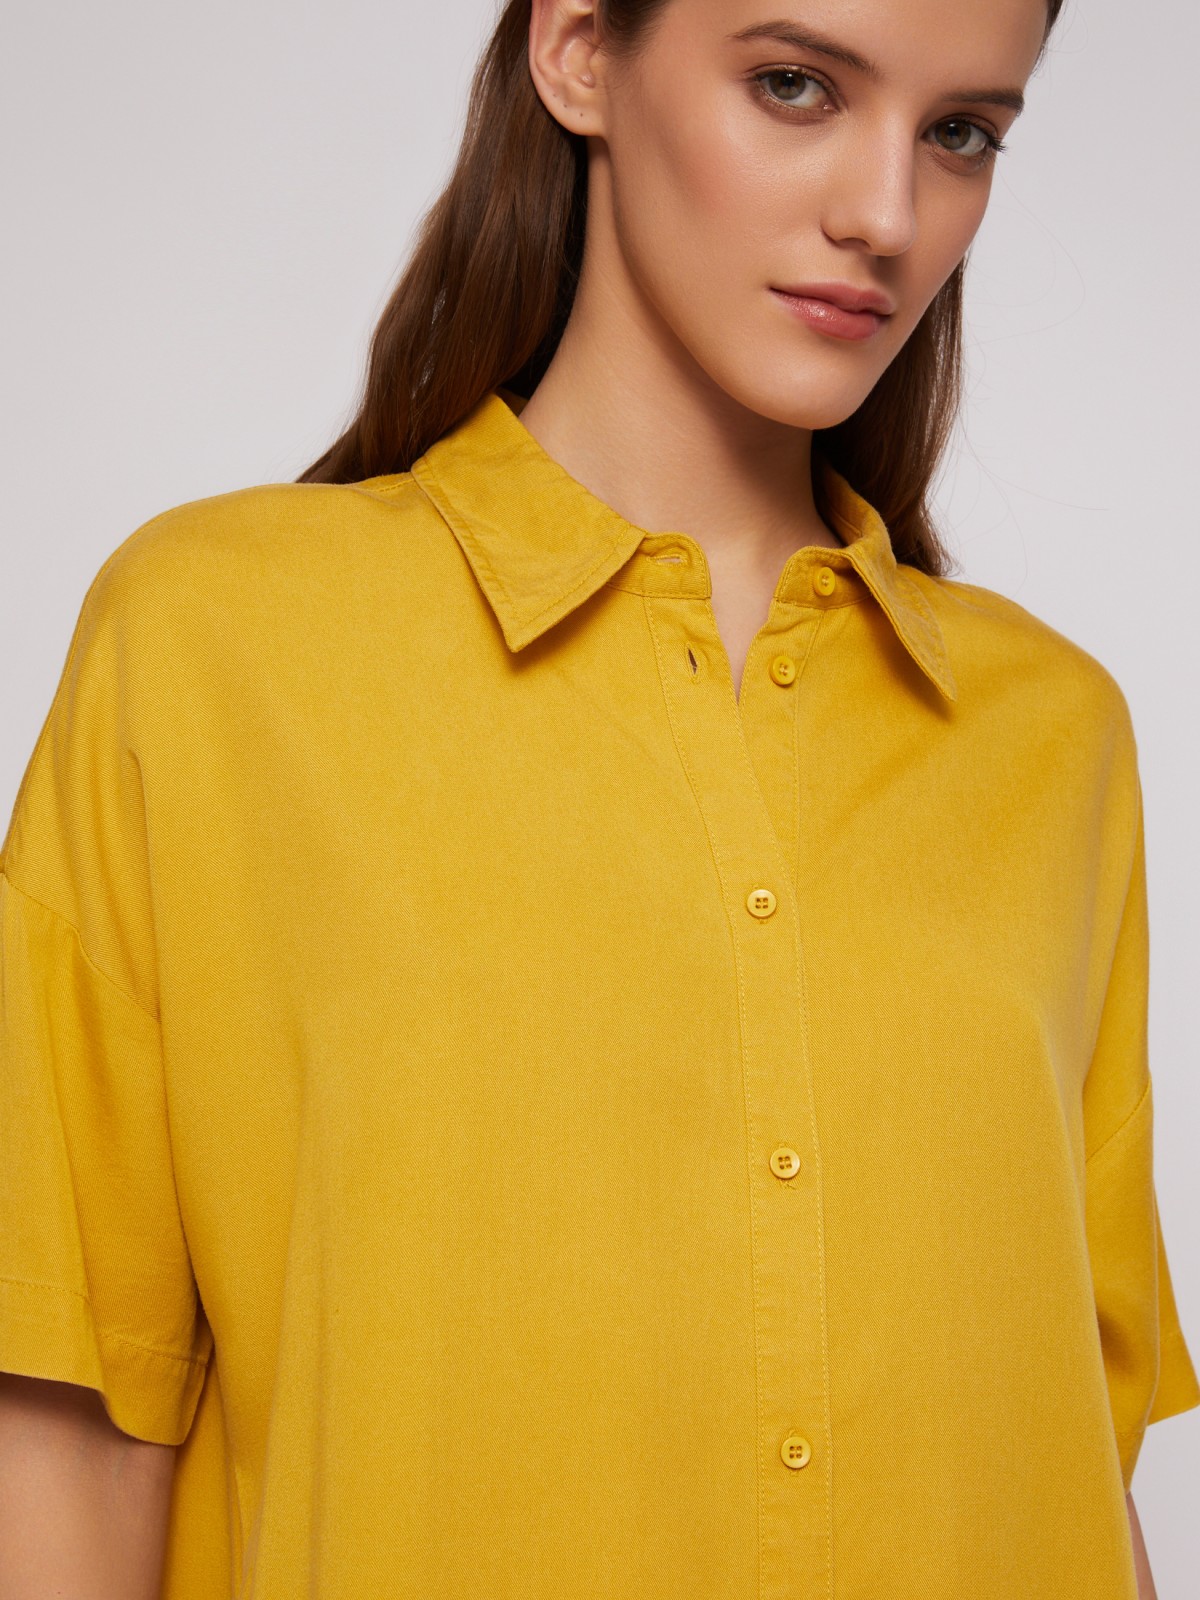 Платье-рубашка мини из лиоцелла на пуговицах zolla 02421827Y053, цвет горчичный, размер S - фото 3